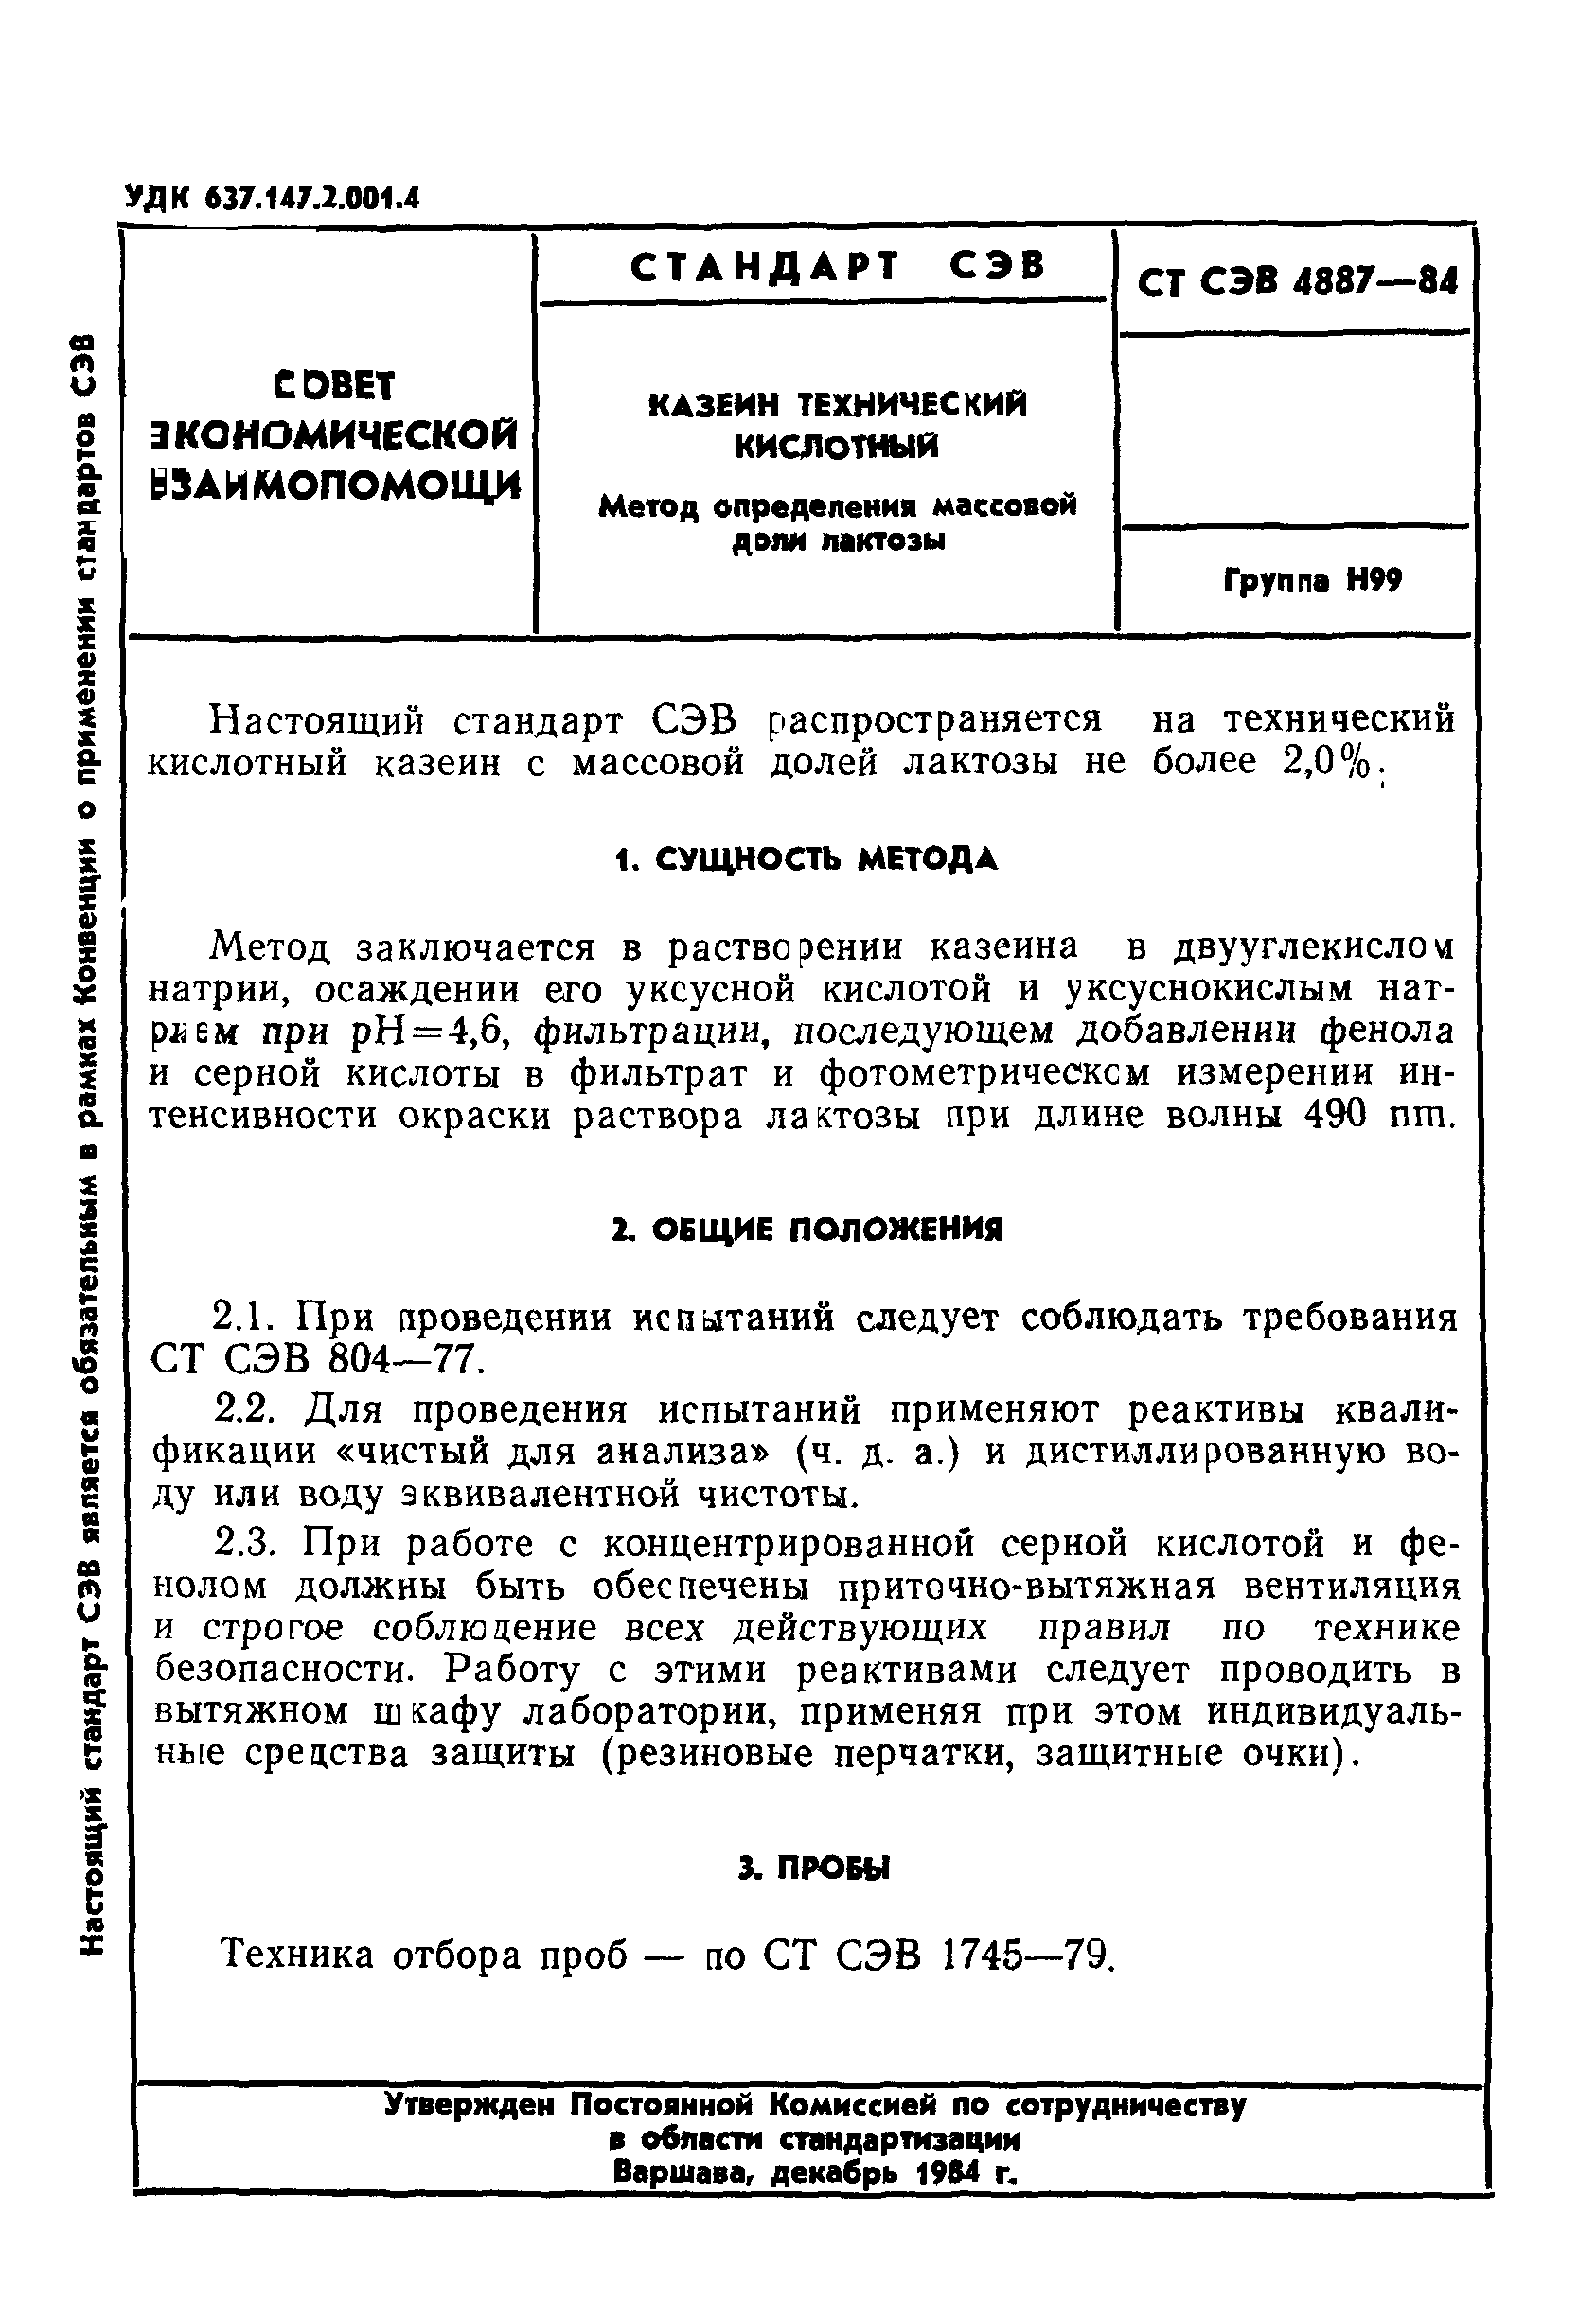 СТ СЭВ 4887-84